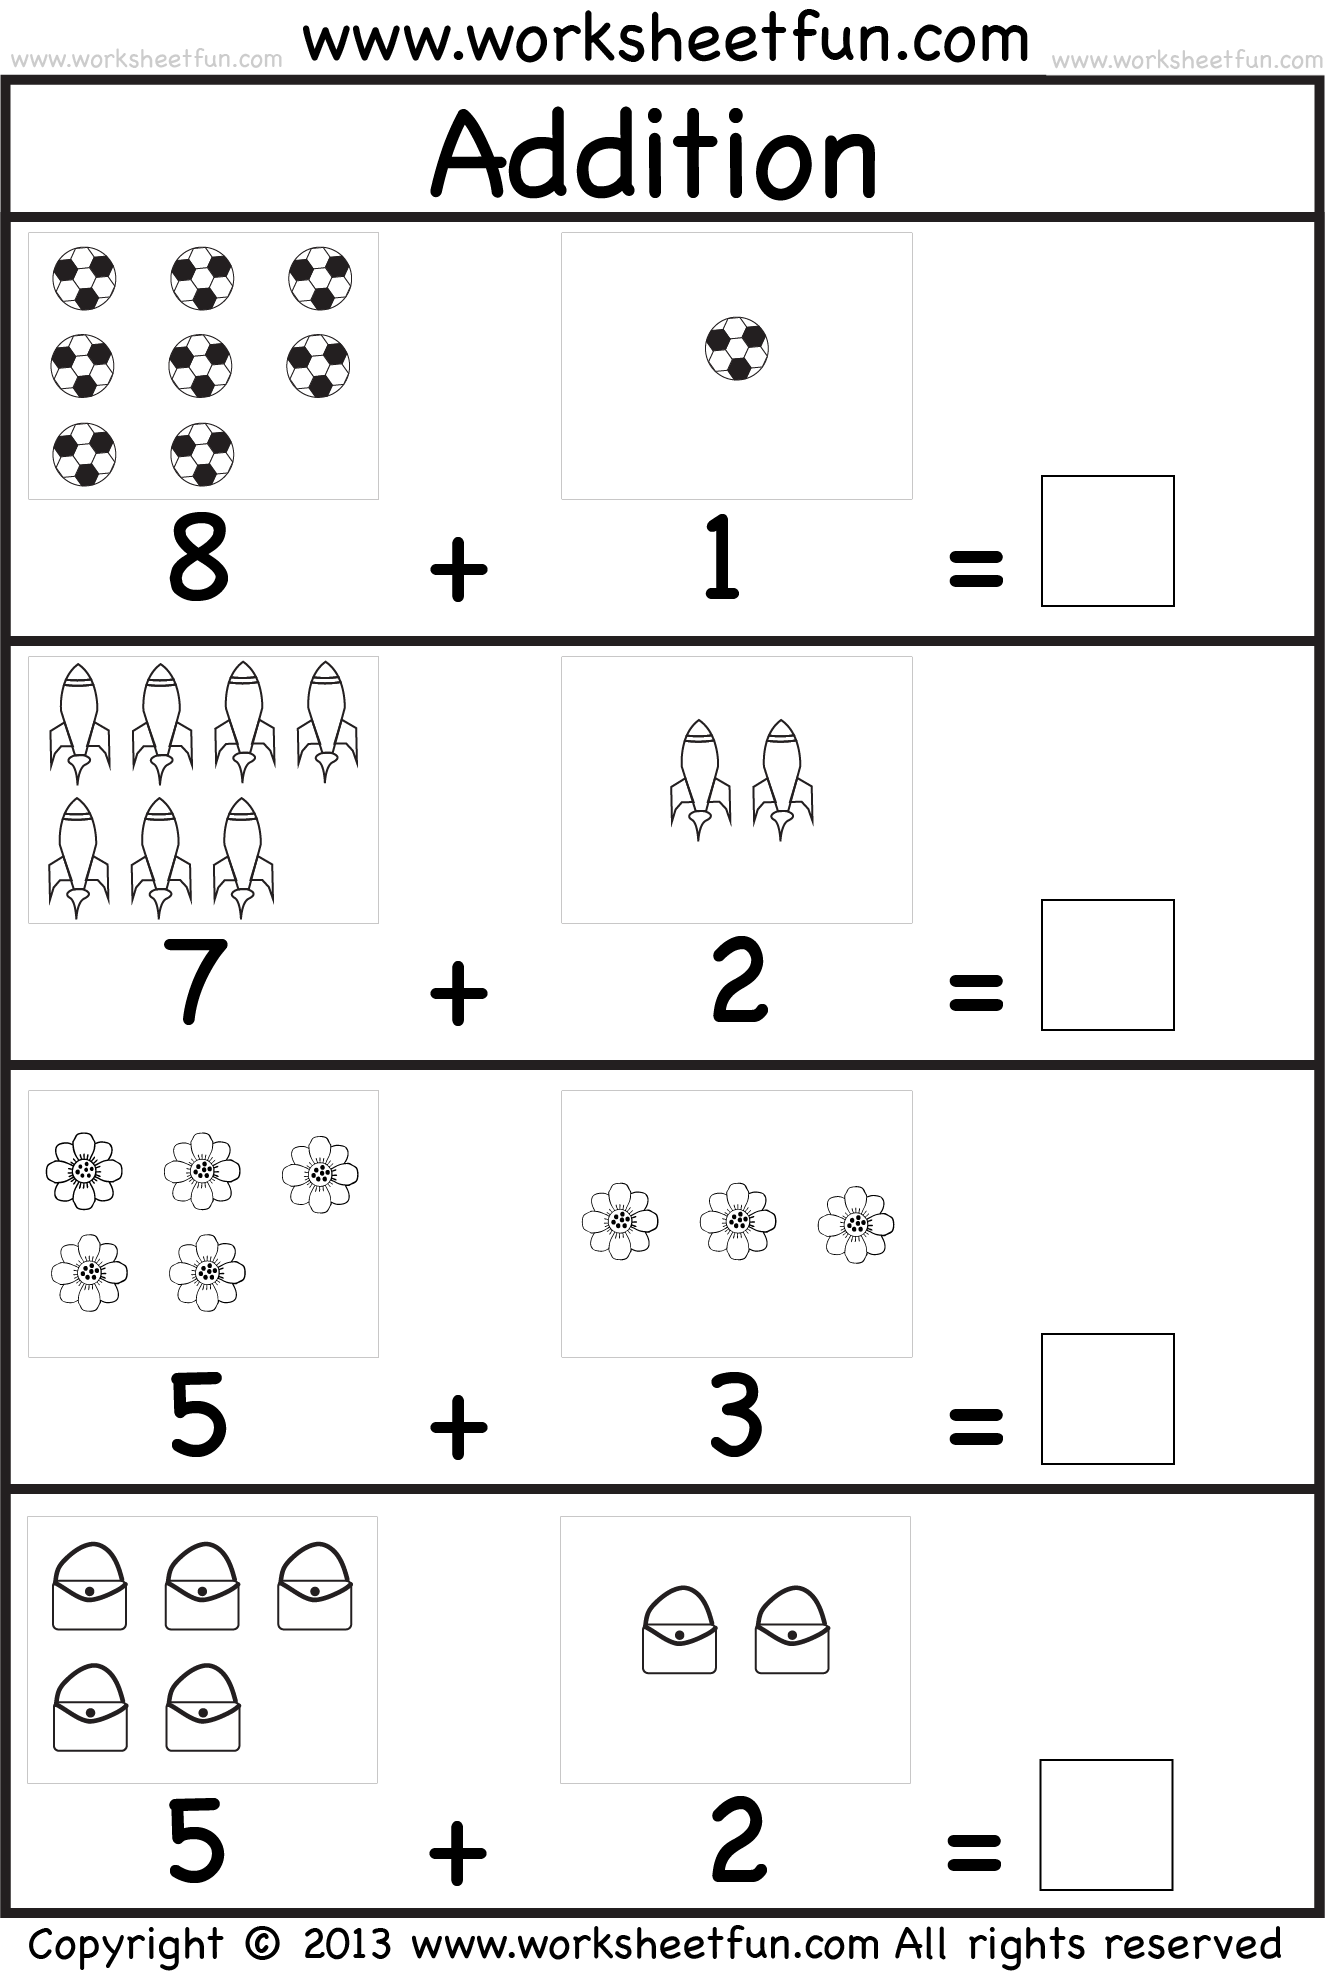 Picture Addition – Beginner Addition – Kindergarten Addition – 5